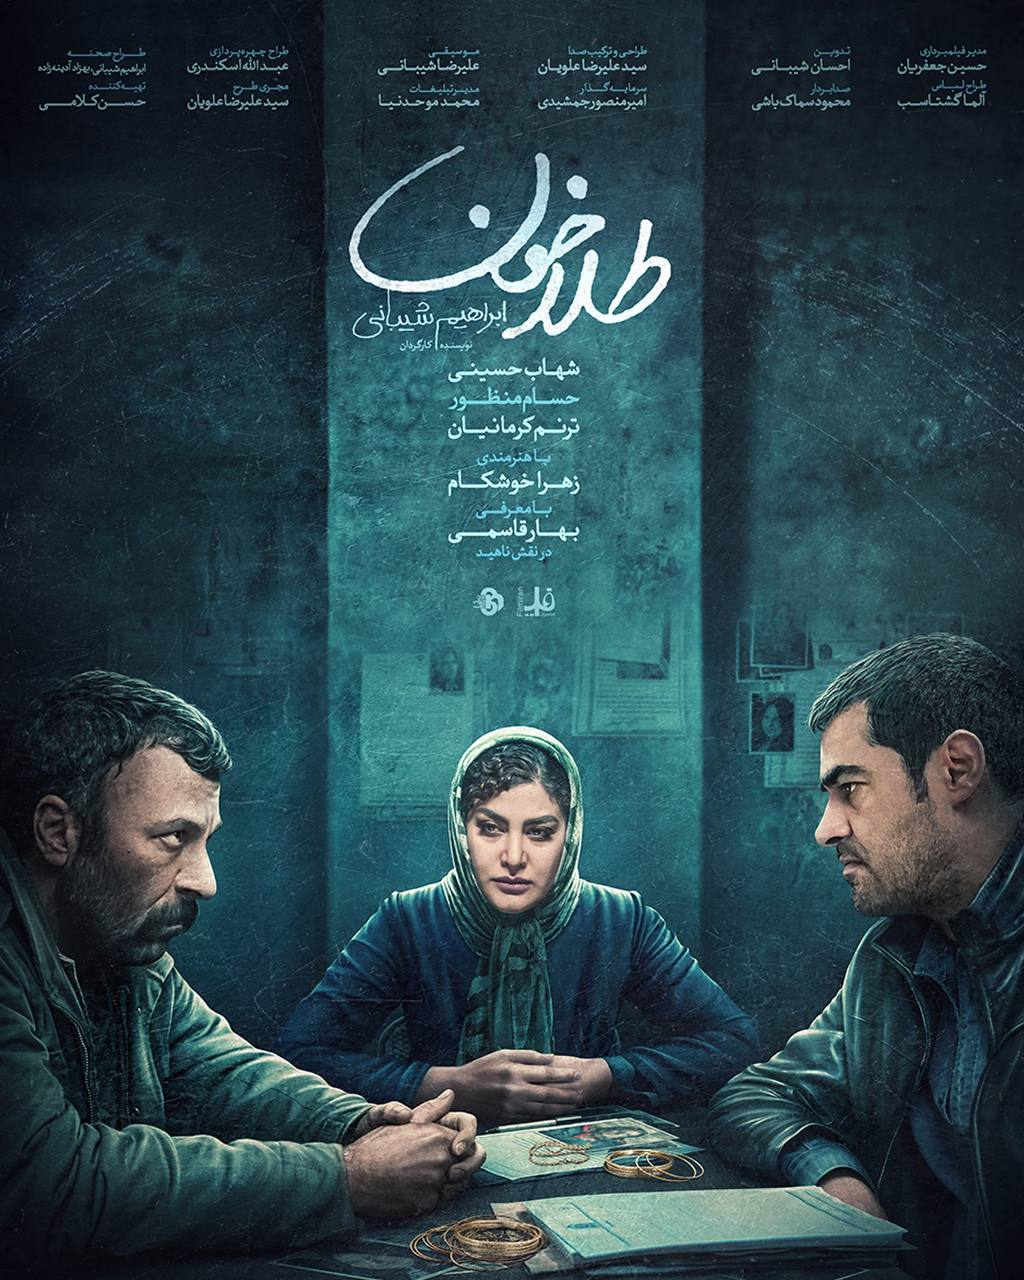 آغاز اکران آنلاین فیلم سینمایی «طلا خون» از چهارشنبه ۶ اردیبهشت